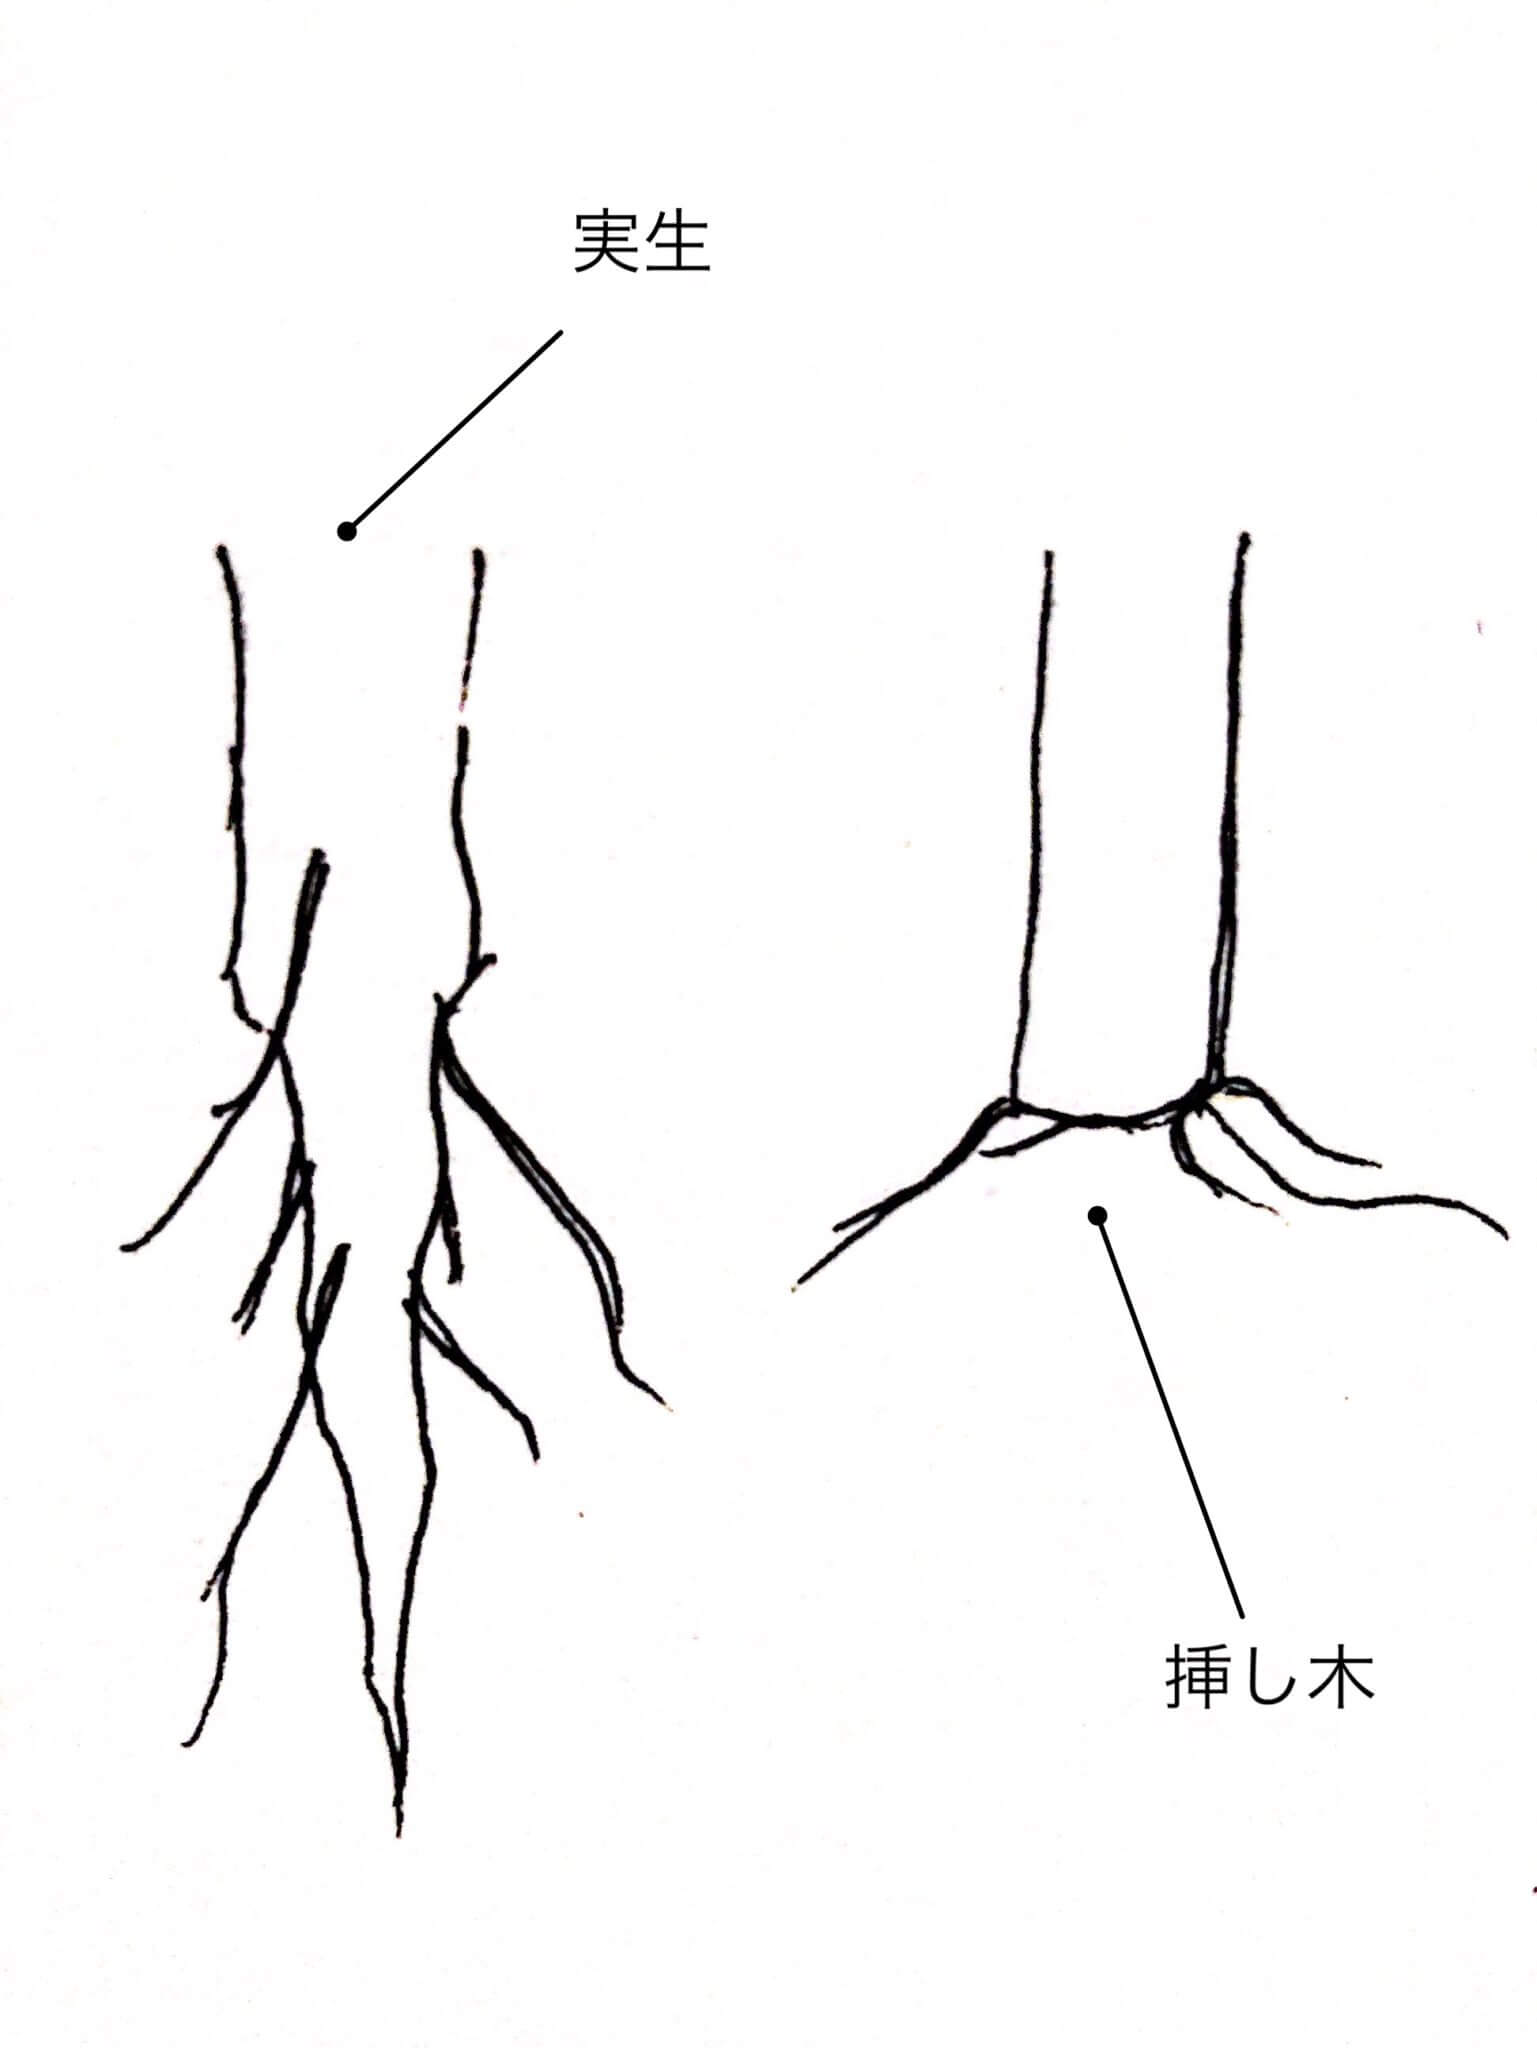 実生と挿し木の根の違い